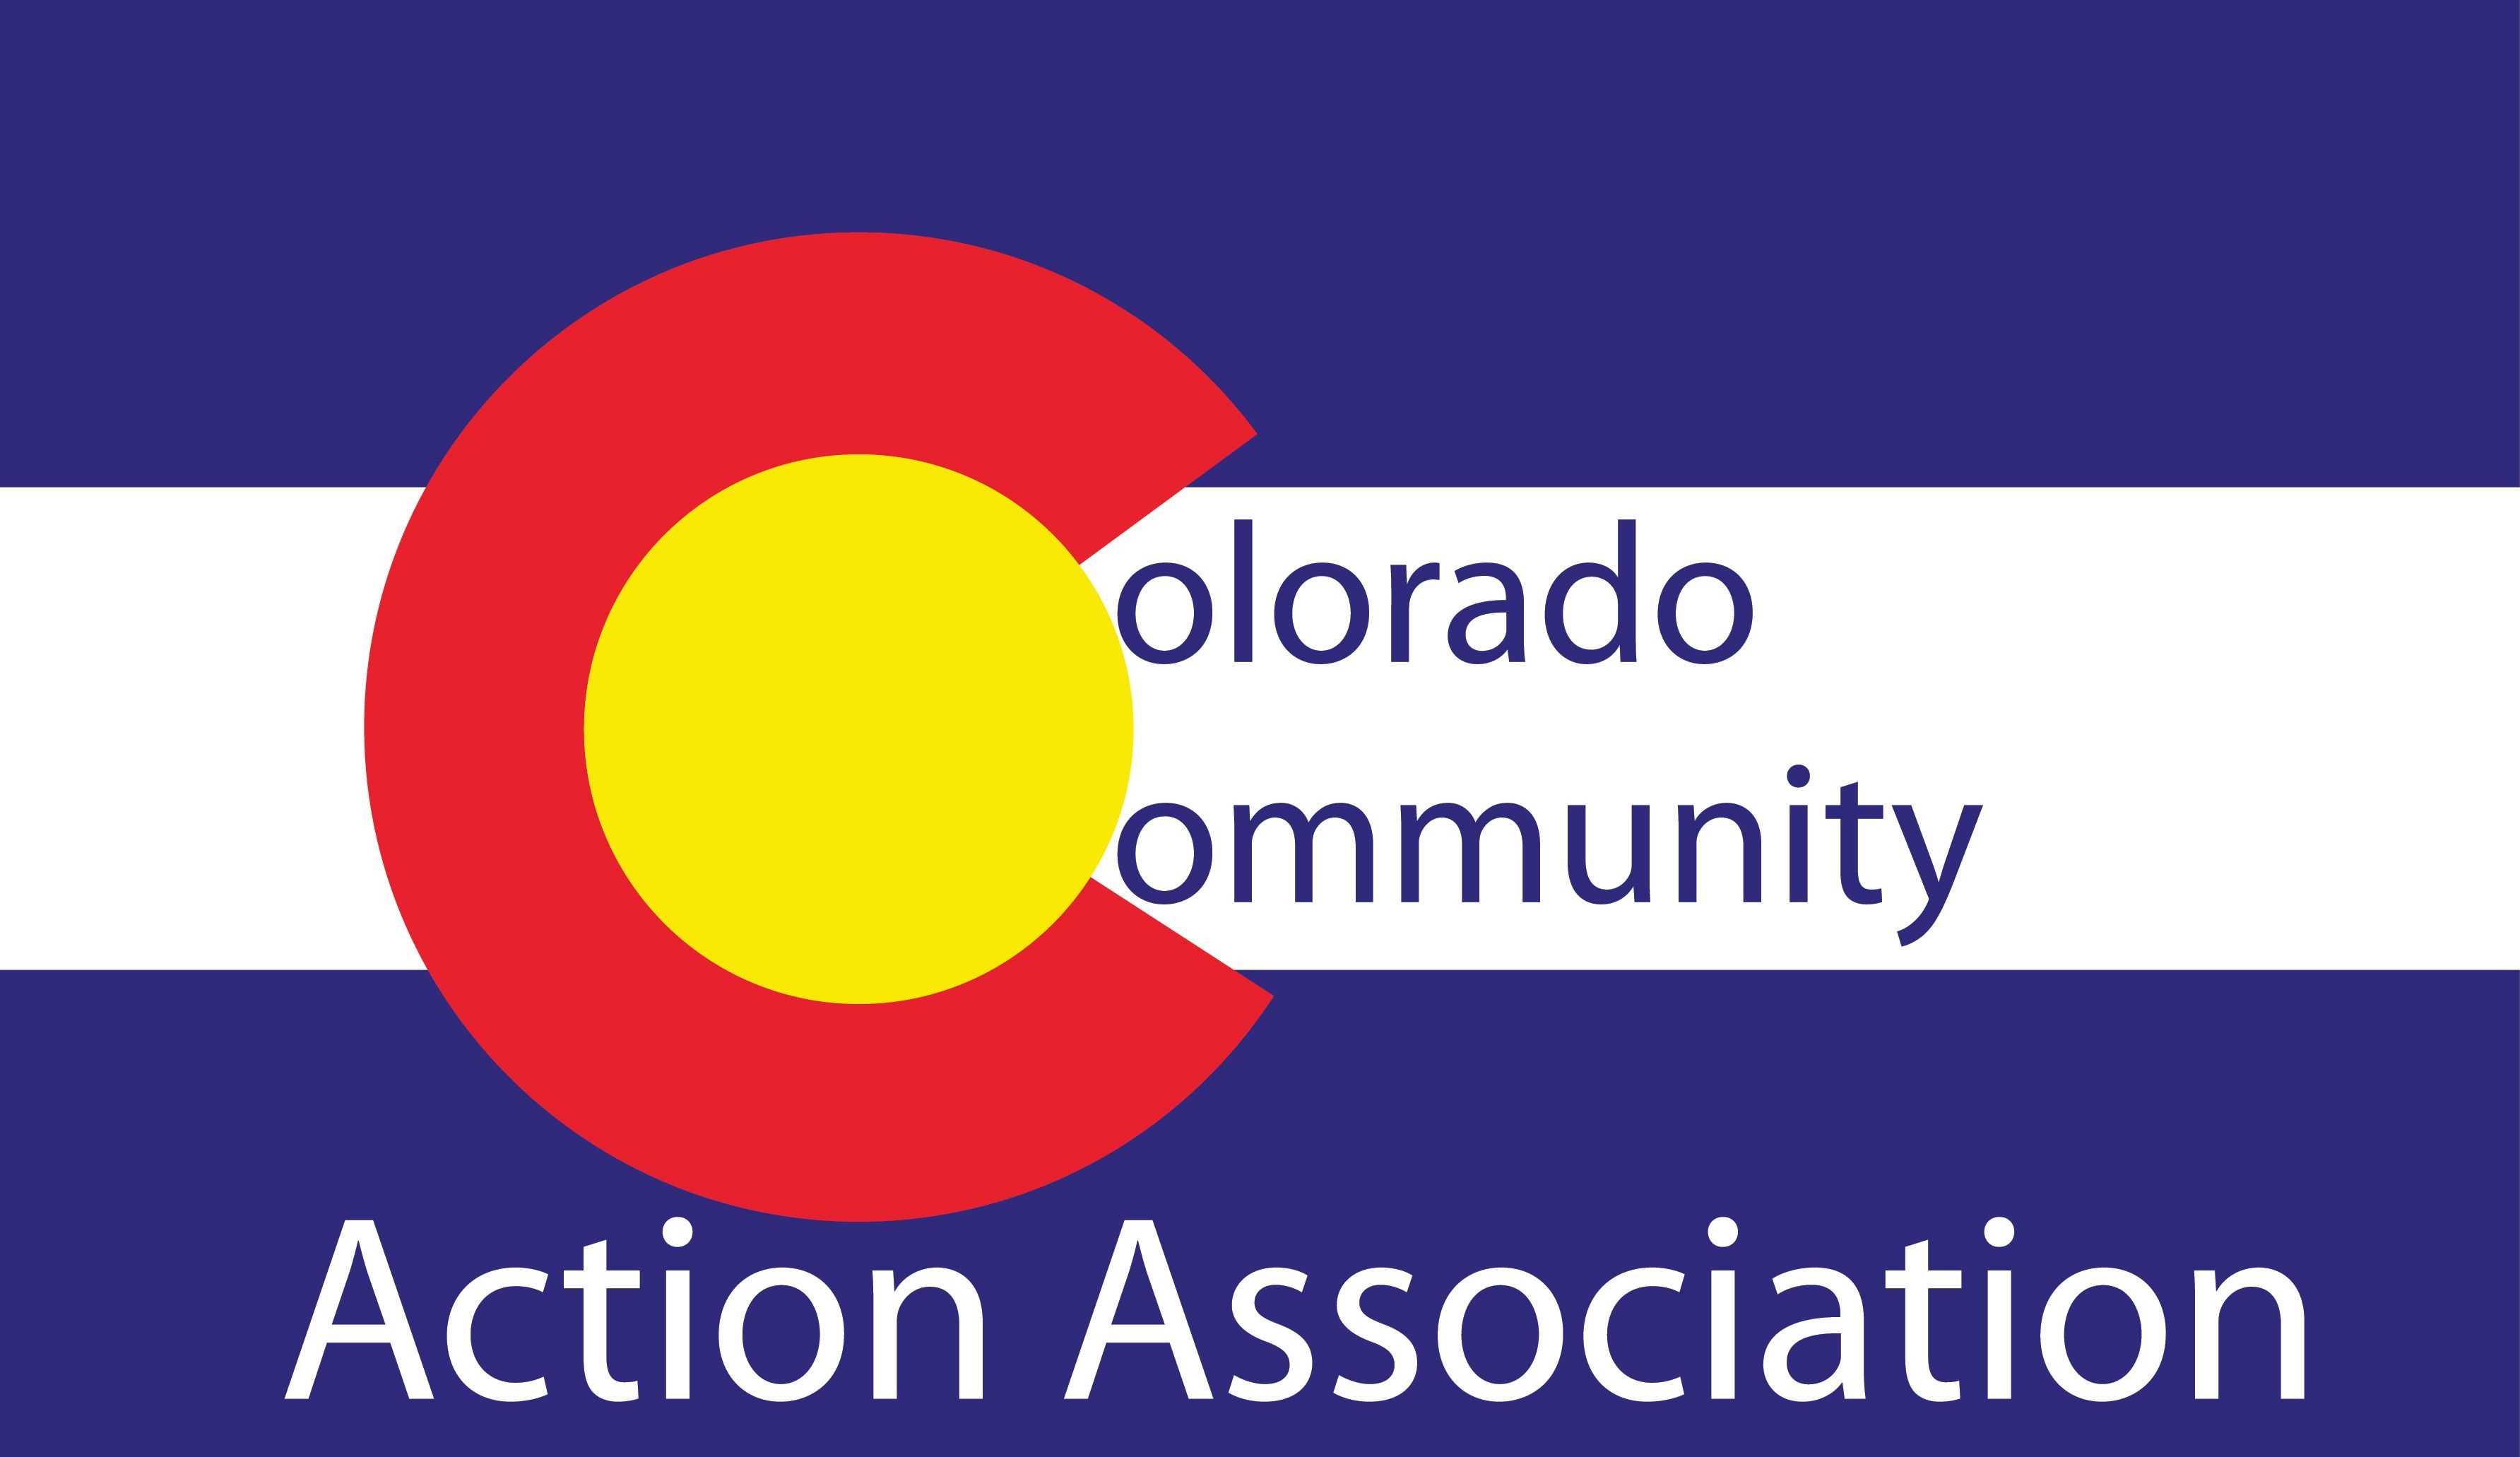 Colorado Community Action Association